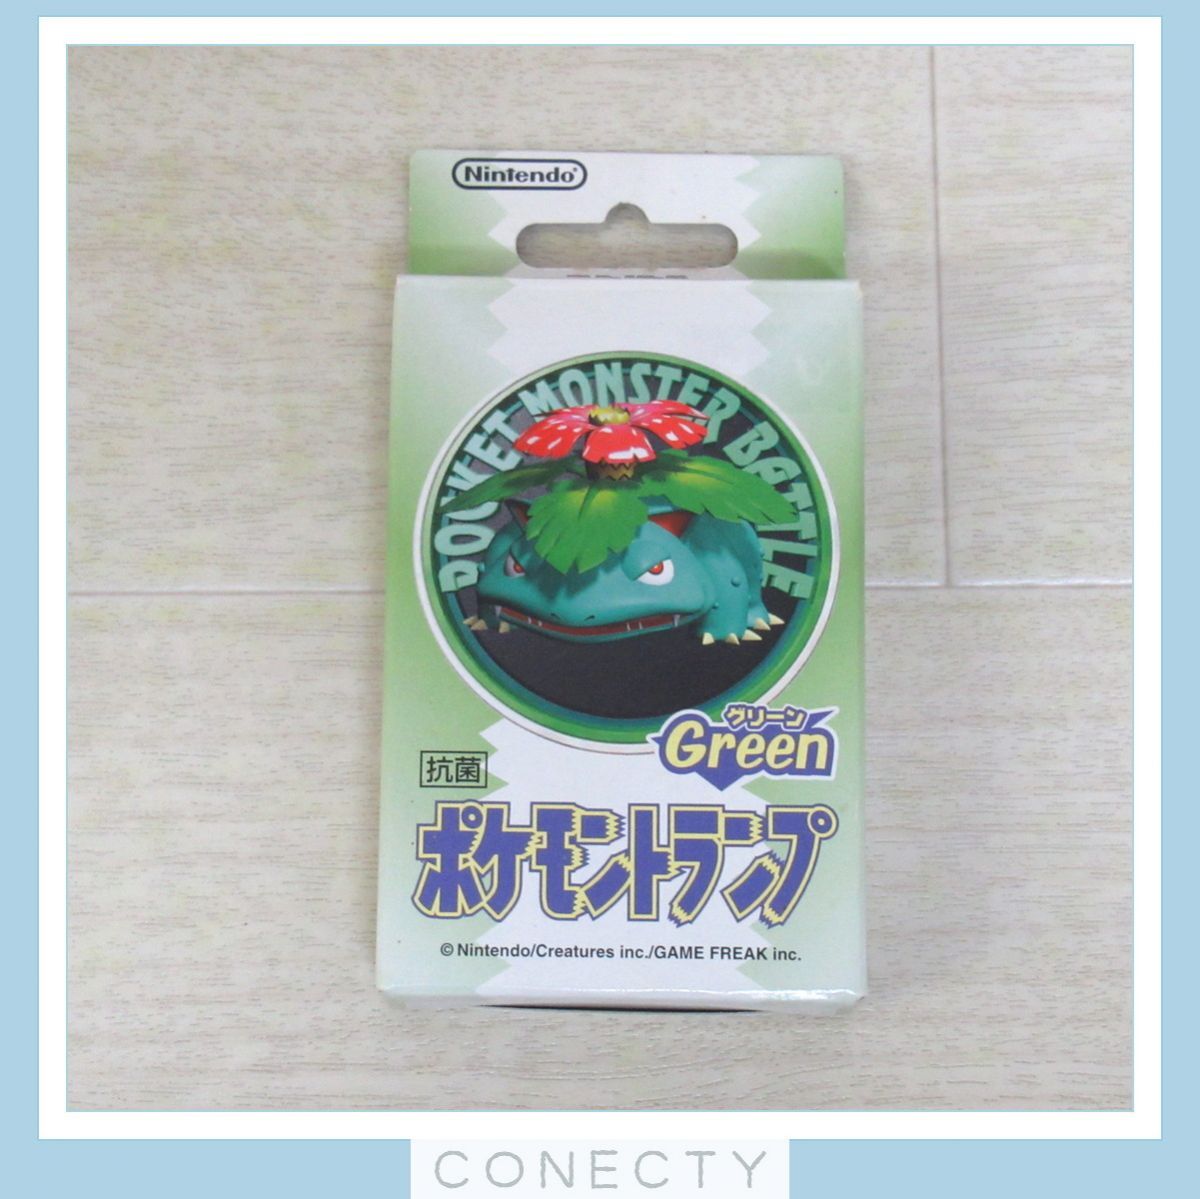  Pokemon карты Green зеленый fsigibana3D Pocket Monster 1998 nintendo [ не использовался / внутри shrink нераспечатанный товар ] ценный * подлинная вещь [J2[SK